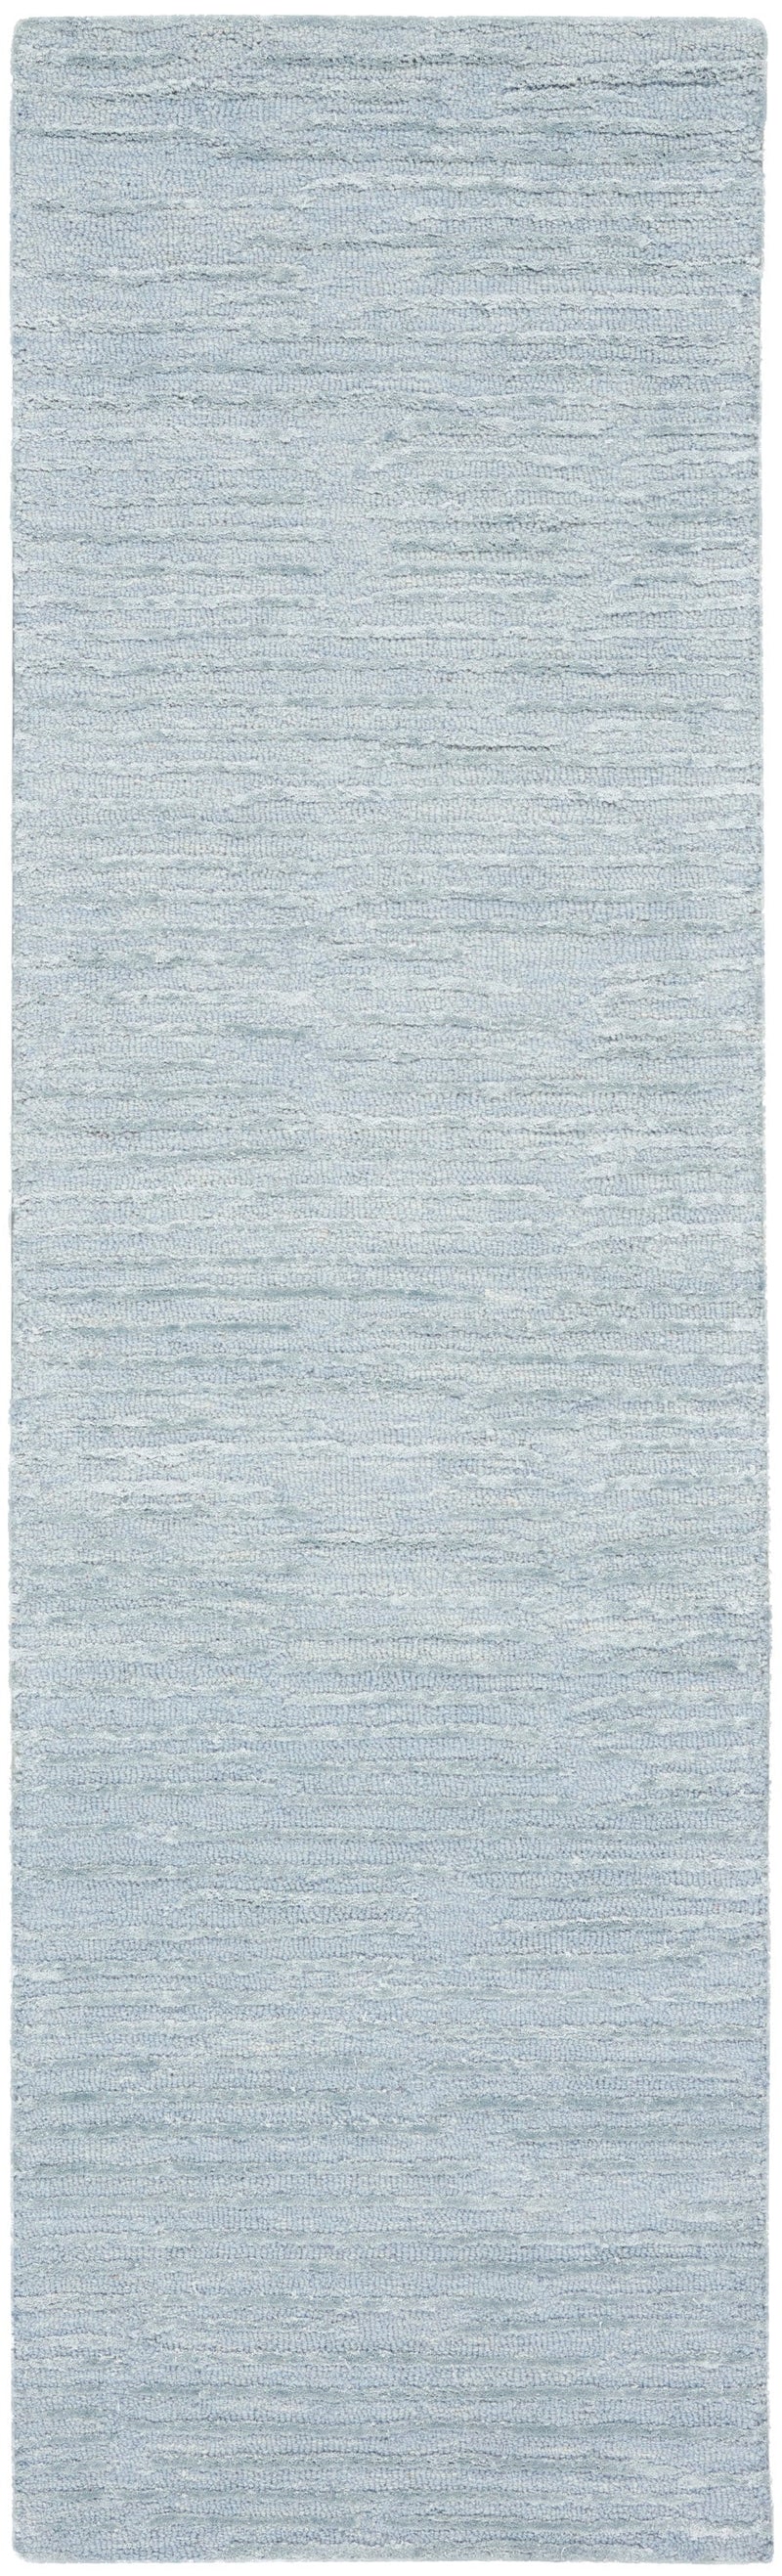 media image for ck010 linear handmade light blue rug by nourison 99446879950 redo 2 227